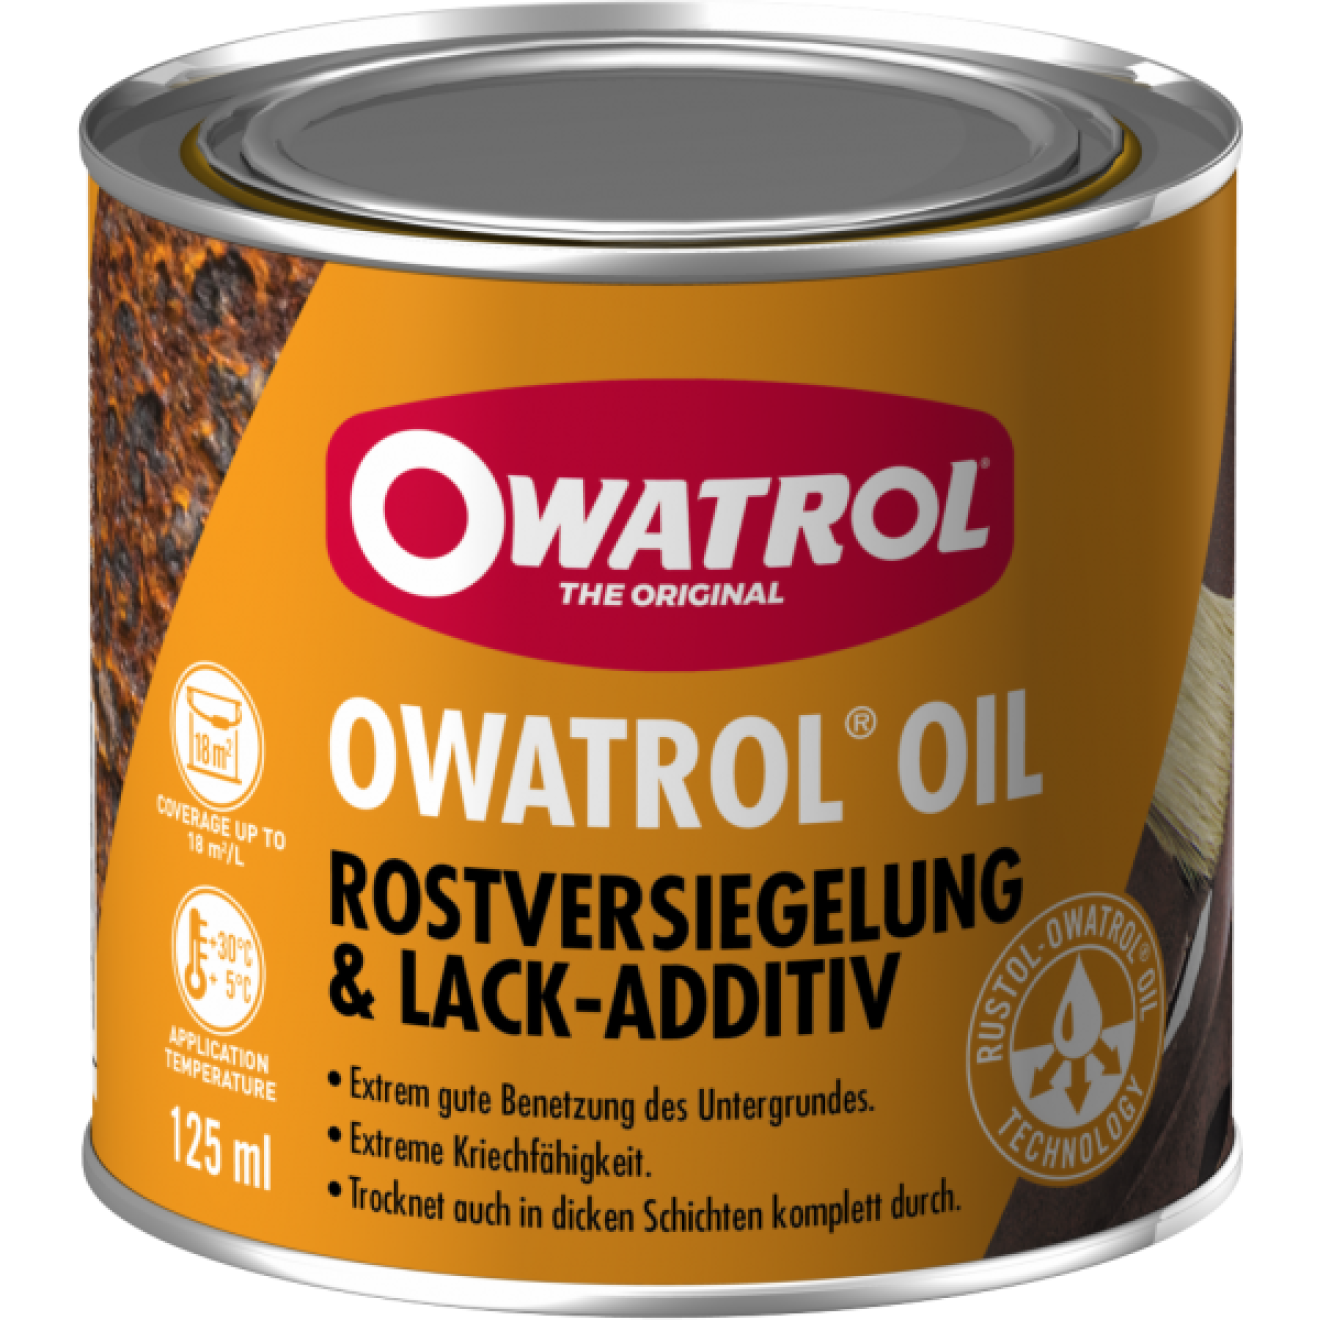 OWATROL OIL  eine Produkt für viele Anwendungsbereiche